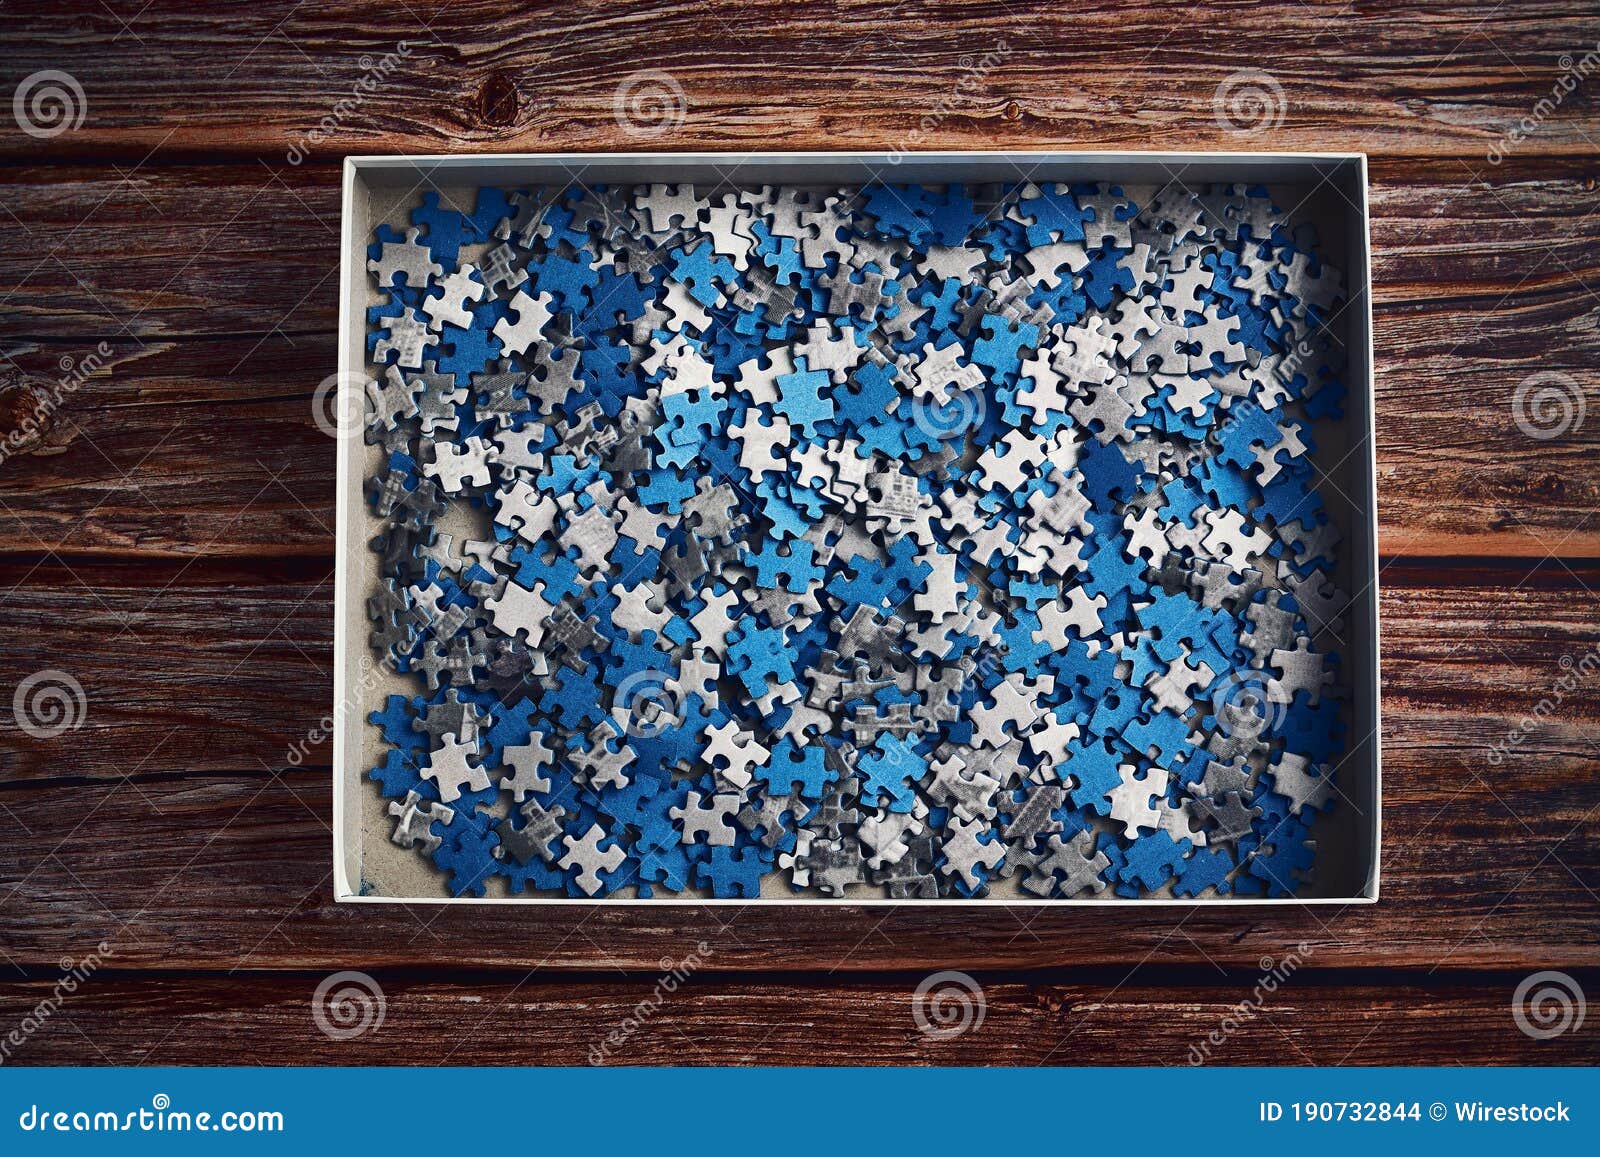 蓝灰色拼图照片排版清新分享拼图 - 模板 - Canva可画